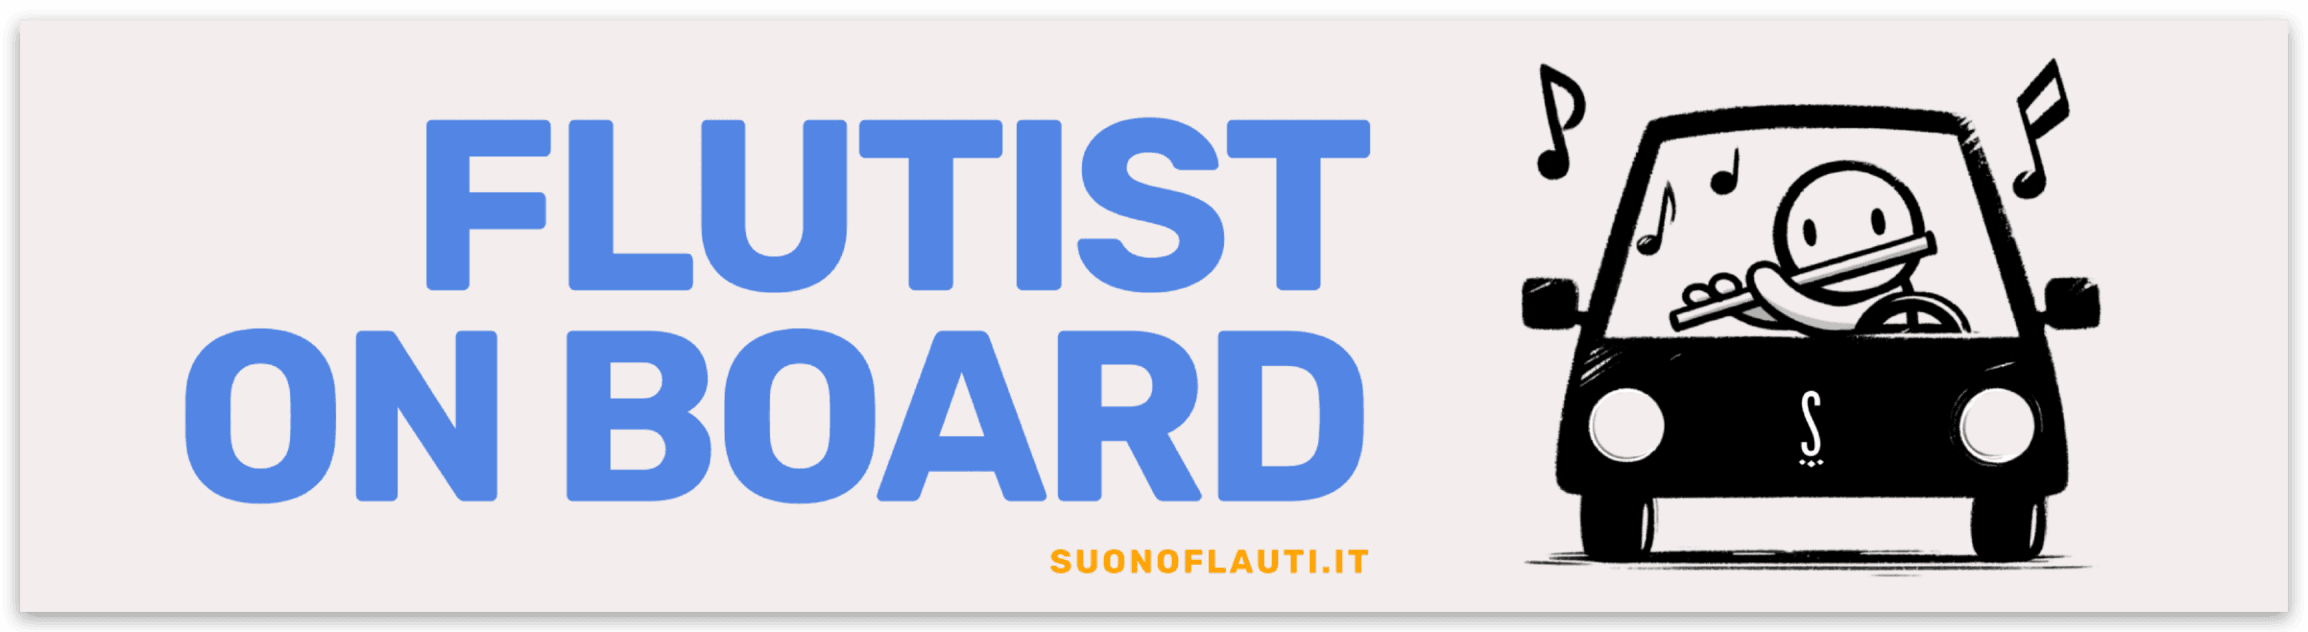 Bumper Sticker 'Flutist on board' | Suono Flauti